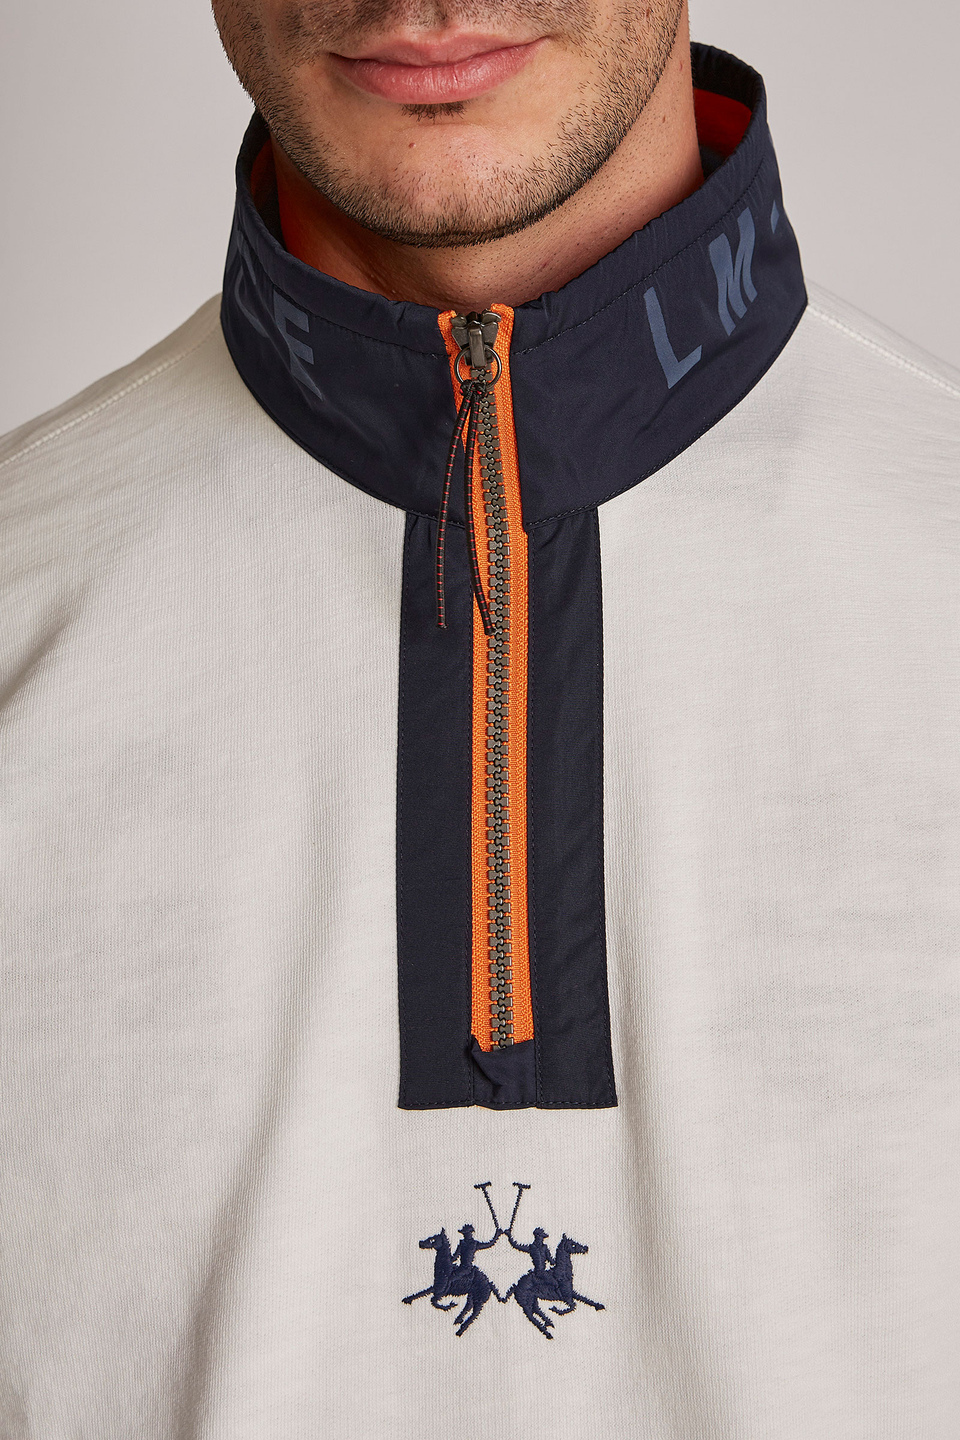 Herren-Sweatshirt aus 100 % Baumwolle mit Reißverschluss, oversized Modell - La Martina - Official Online Shop